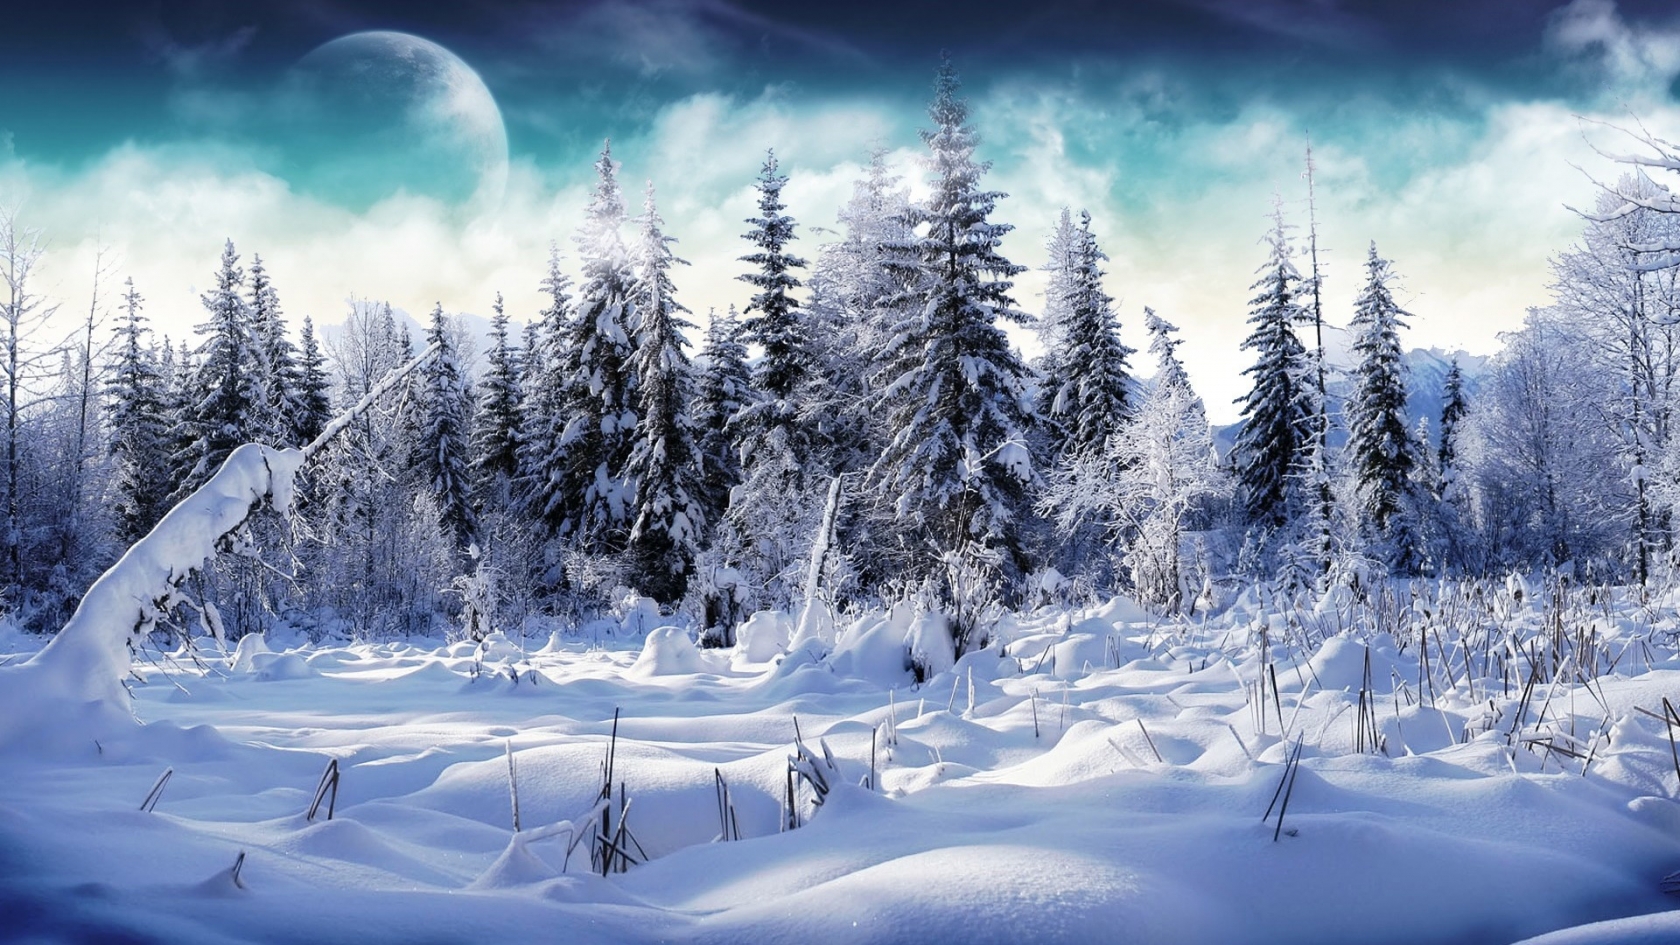 Trees full of snow for 1680 x 945 HDTV resolution